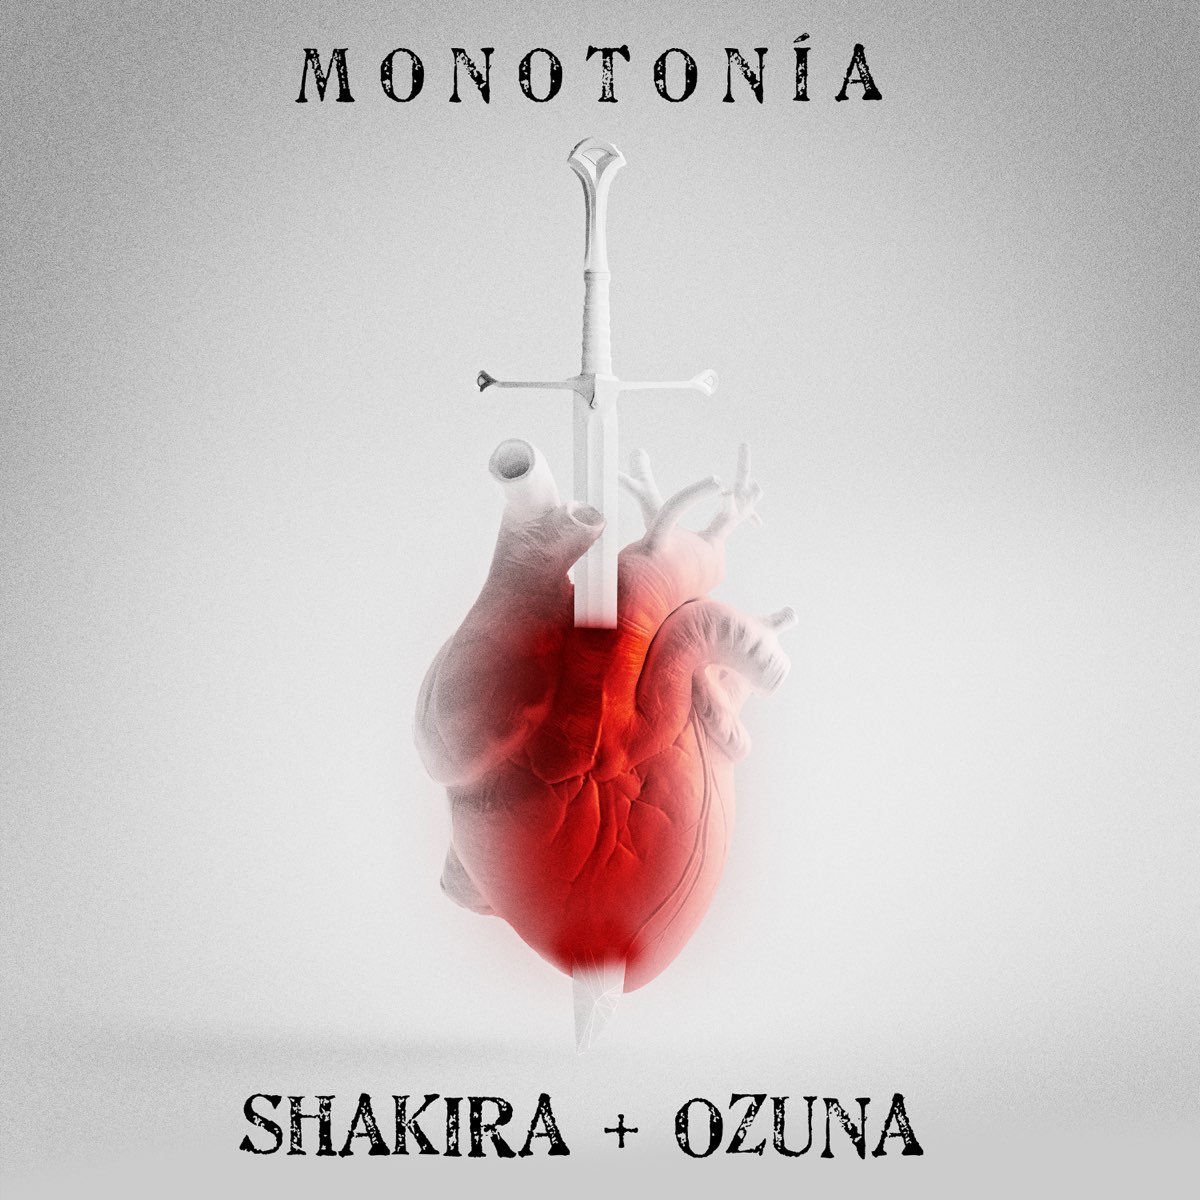 Monotonía - Single – Album par Shakira & Ozuna – Apple Music